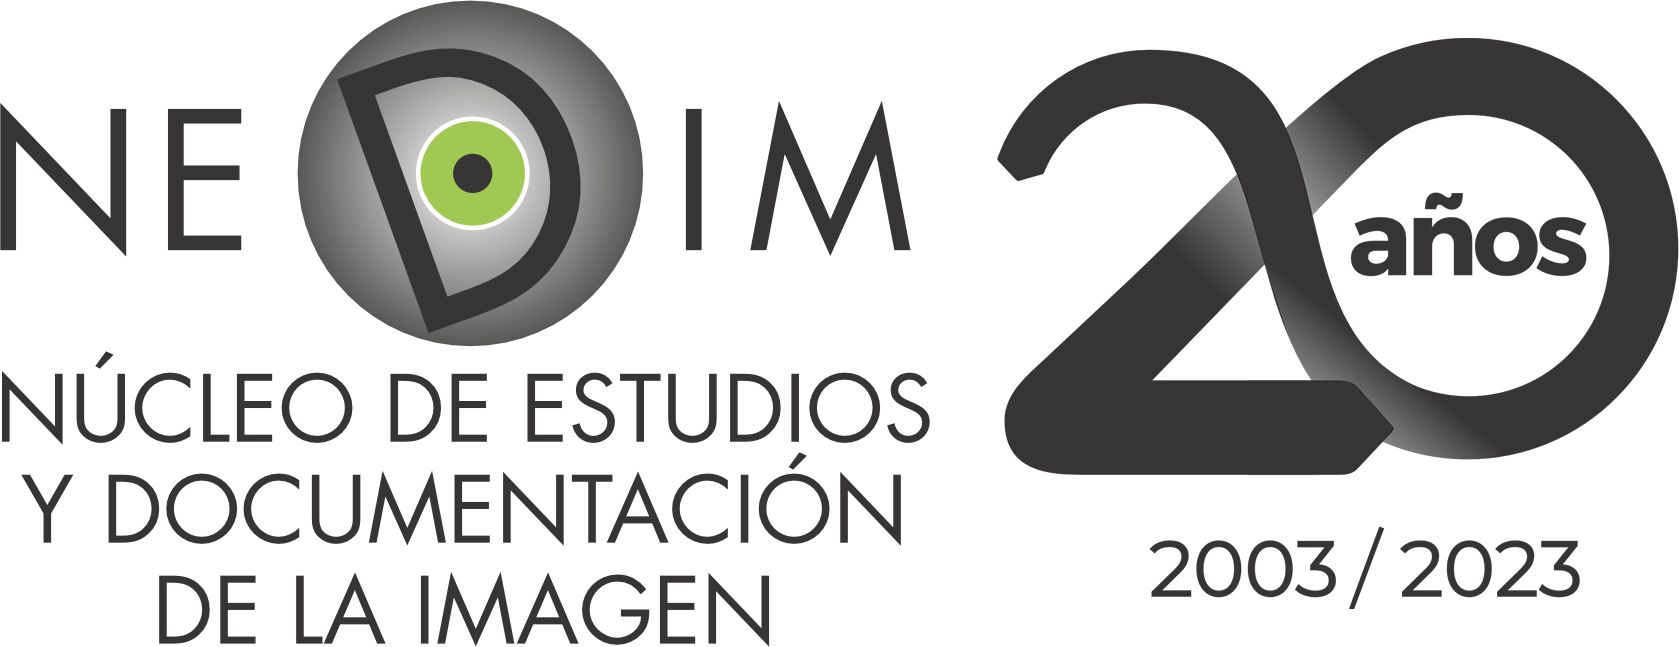 Logo NEDIM 20 años